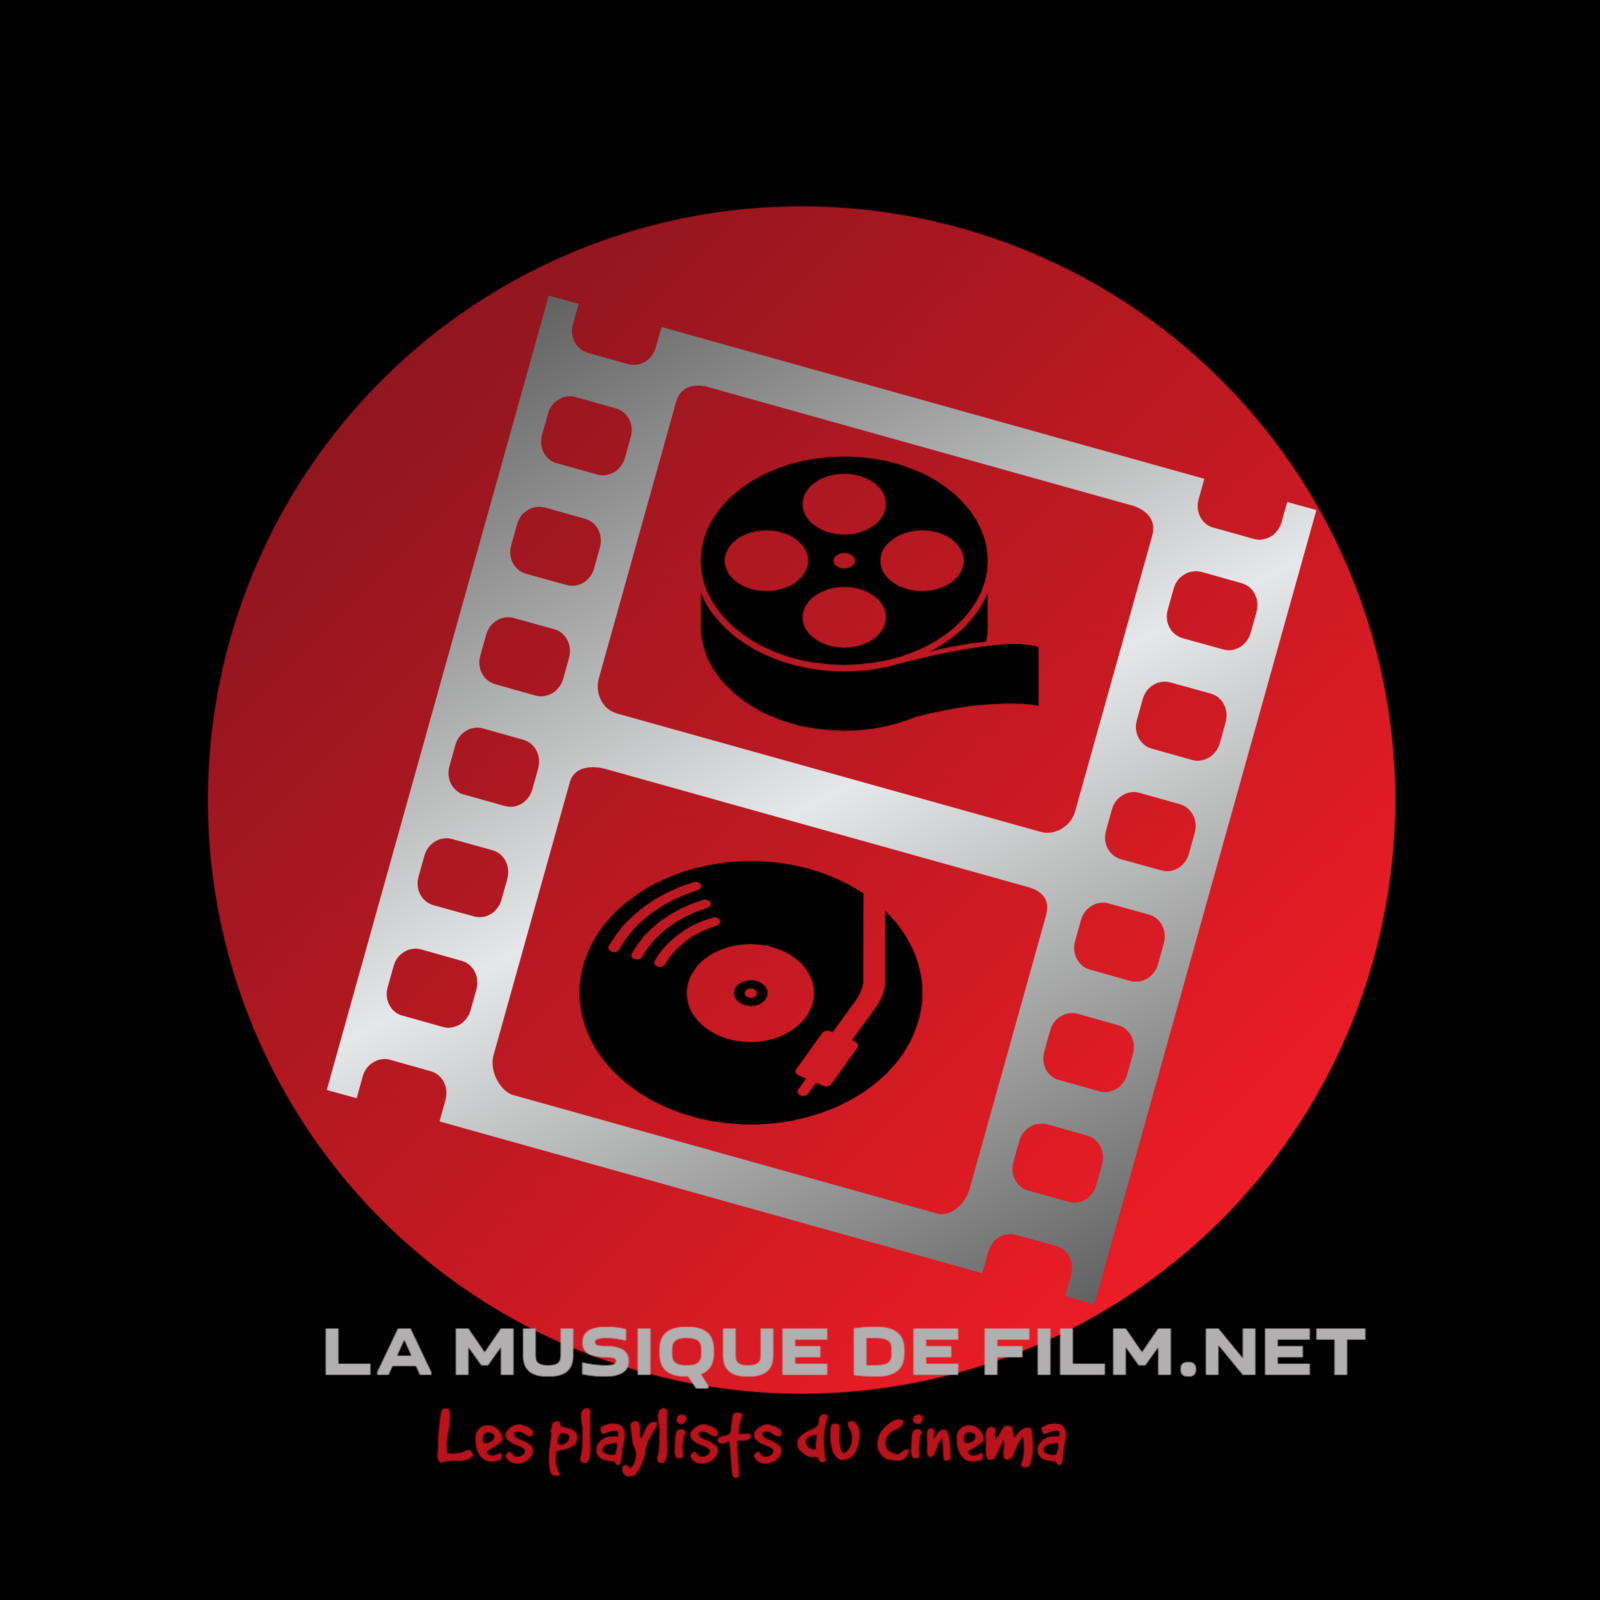 La musique de film - Les playlists du cinéma - Ce blog est dédié à